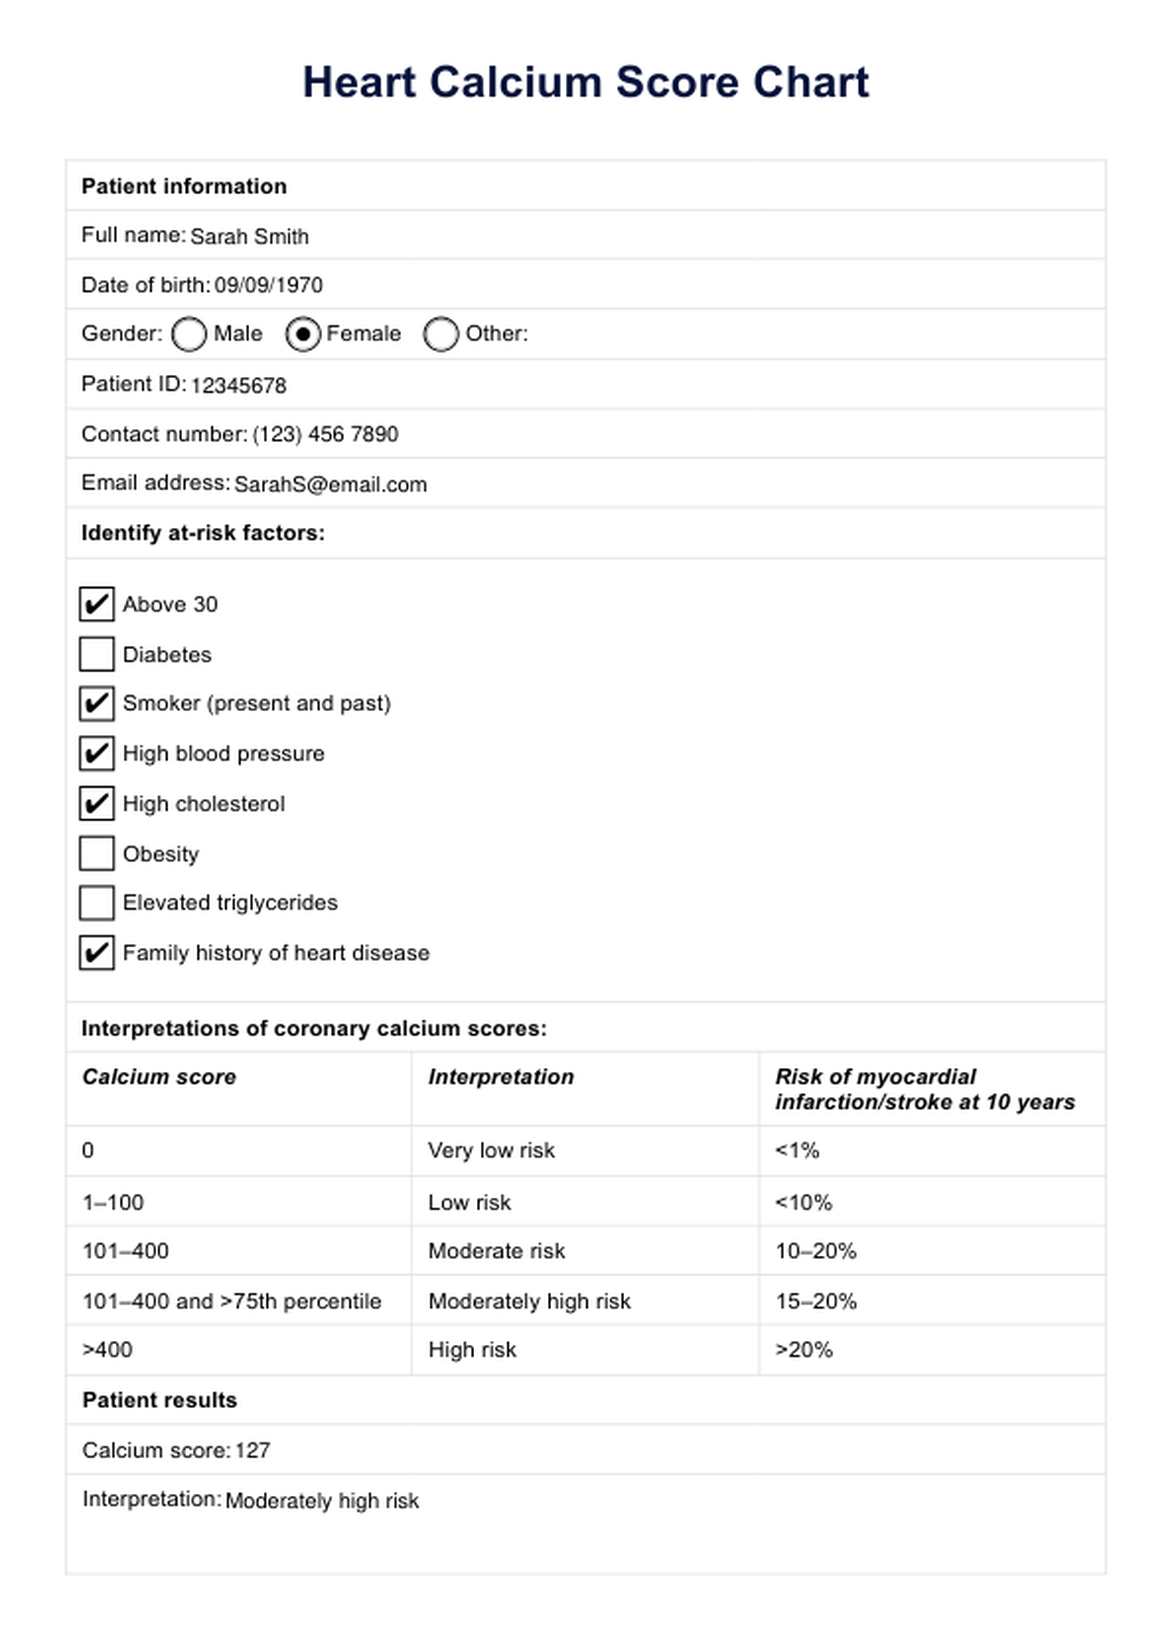 Heart Calcium Score PDF Example